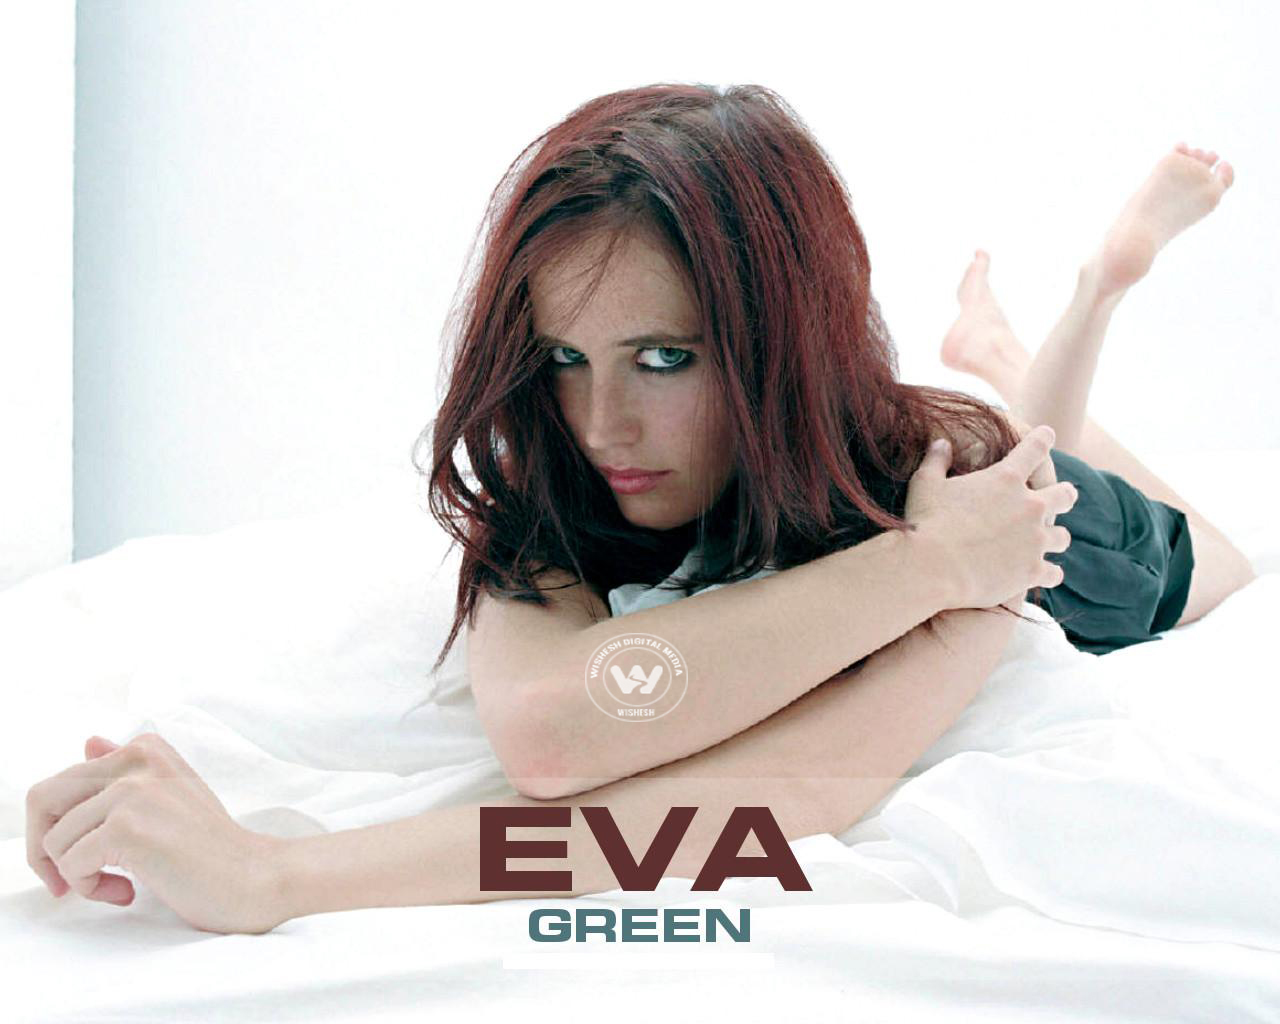 Wallpaper 1of 10 | Eva Green | Eva Green Hot Images | Eva Green Hot Pictures.